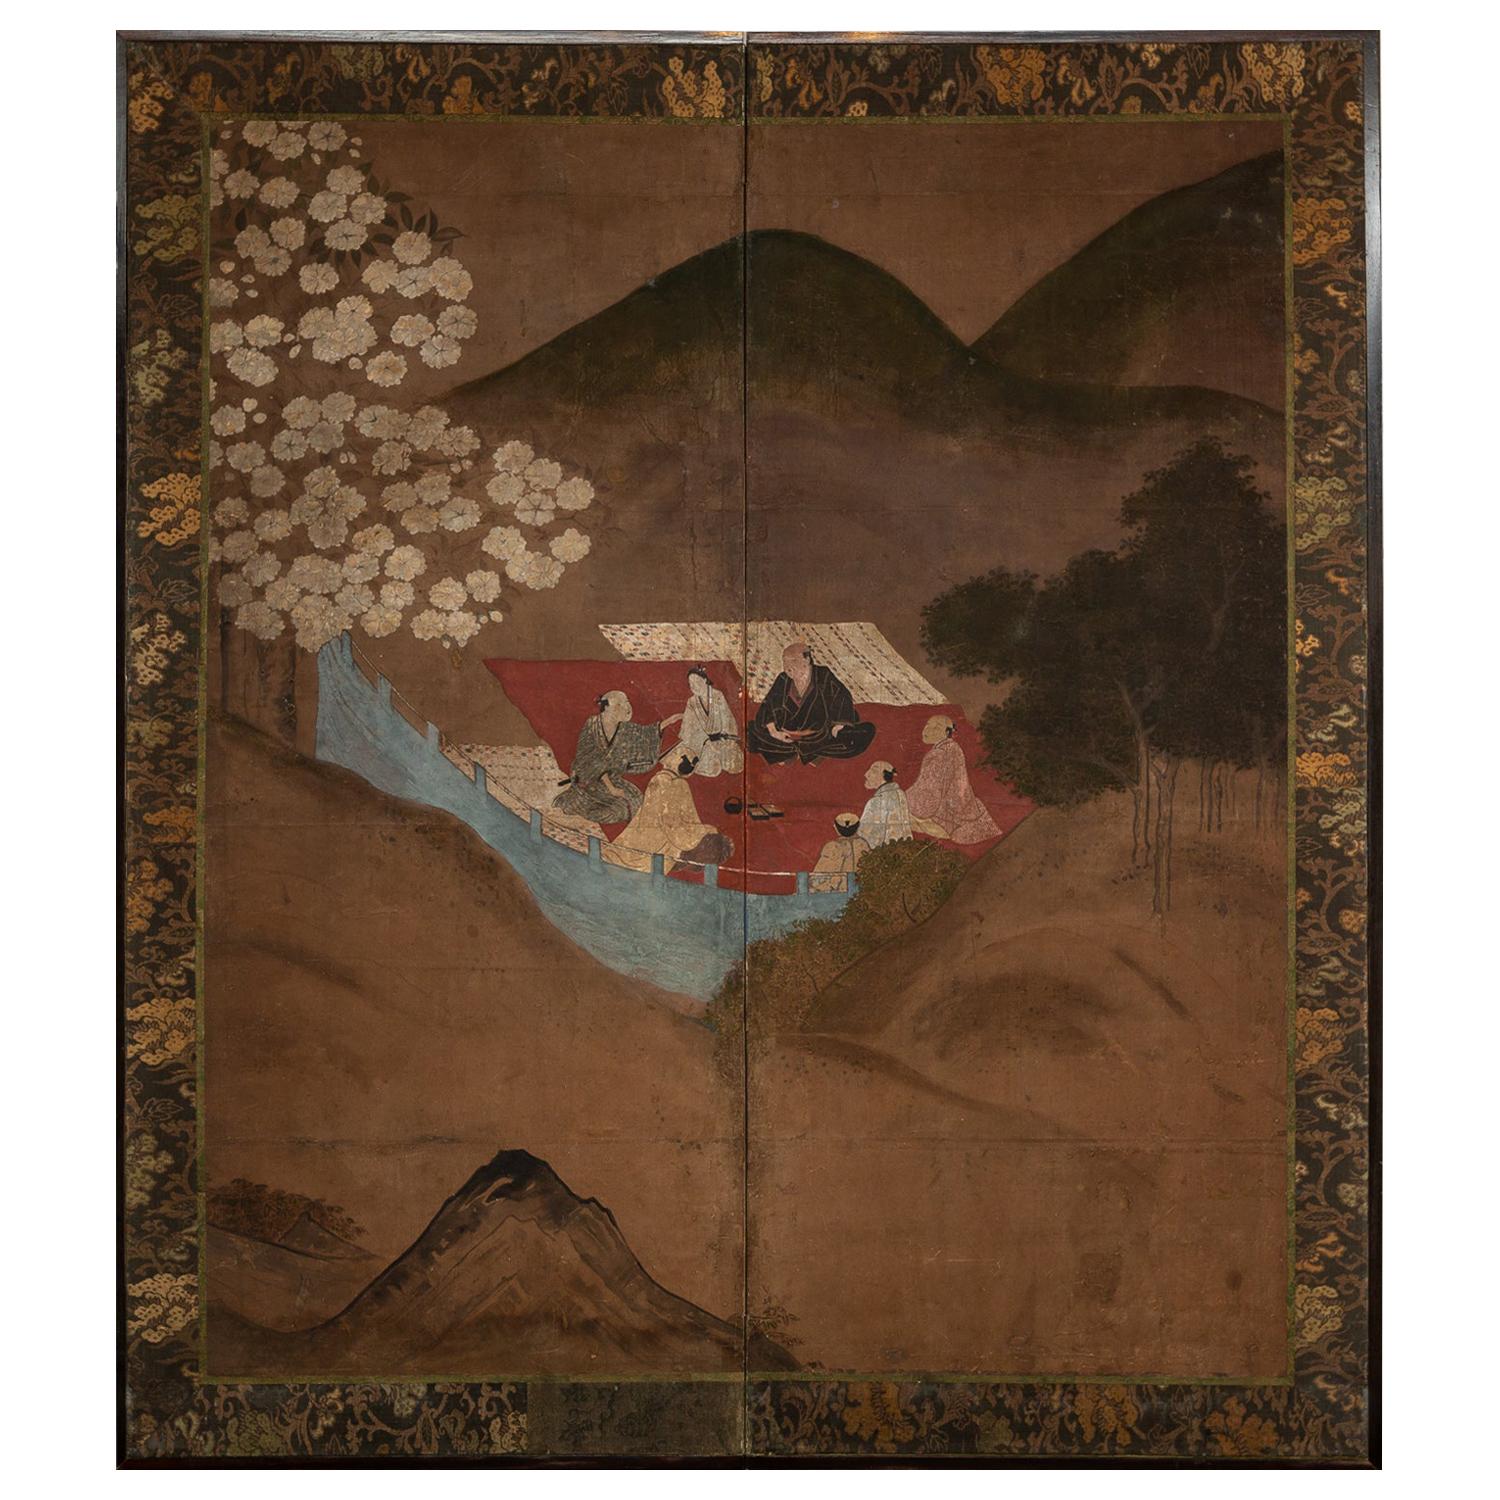 Japanischer japanischer Raumteiler mit zwei Tafeln, Kirschenblüten, Ansichtsparty